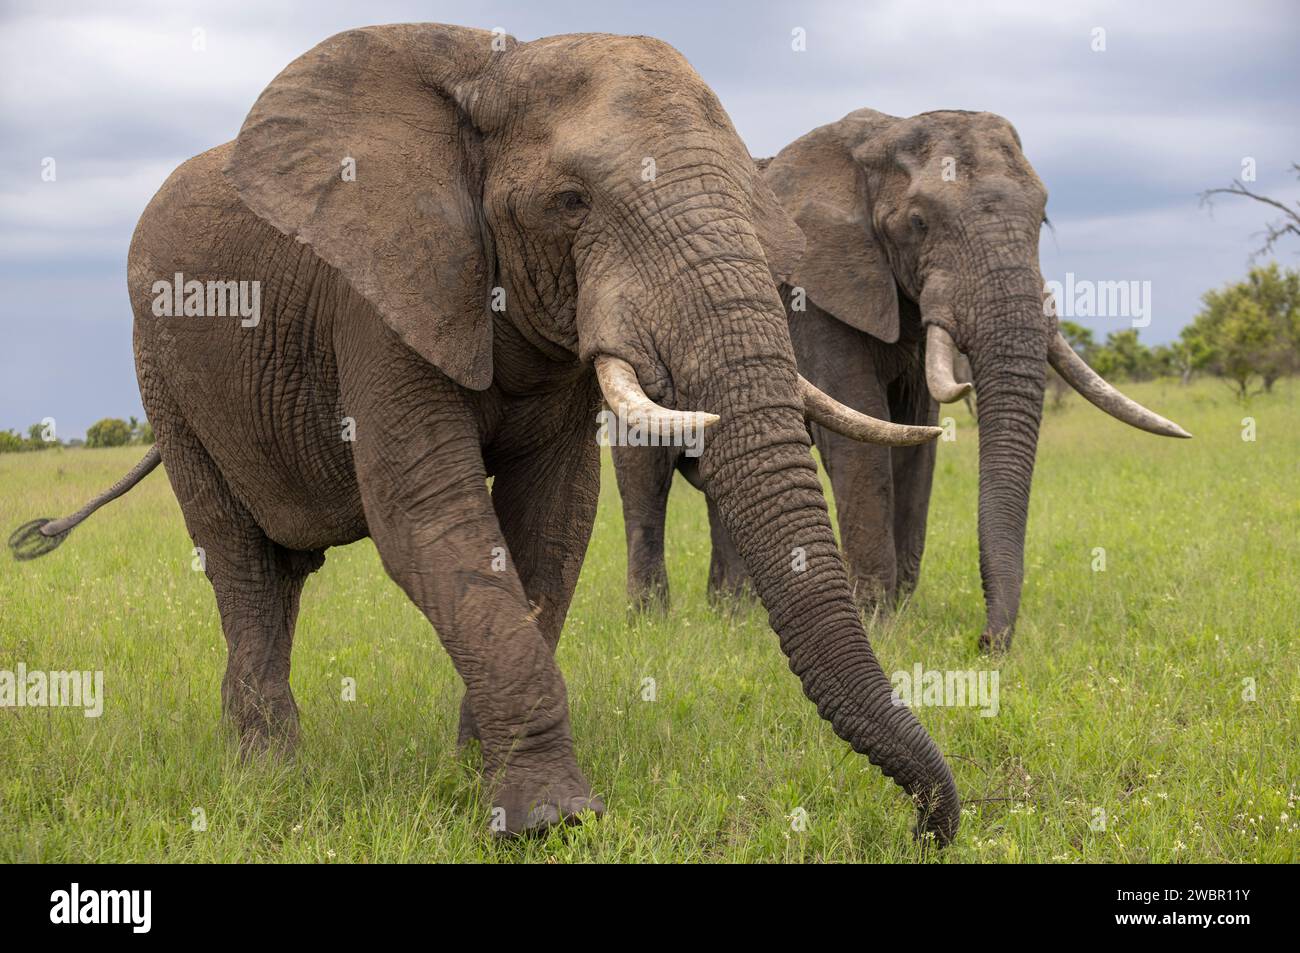 Deux taureaux éléphants matures (Loxodonta africana) se nourrissant dans une prairie sous un ciel couvert Banque D'Images